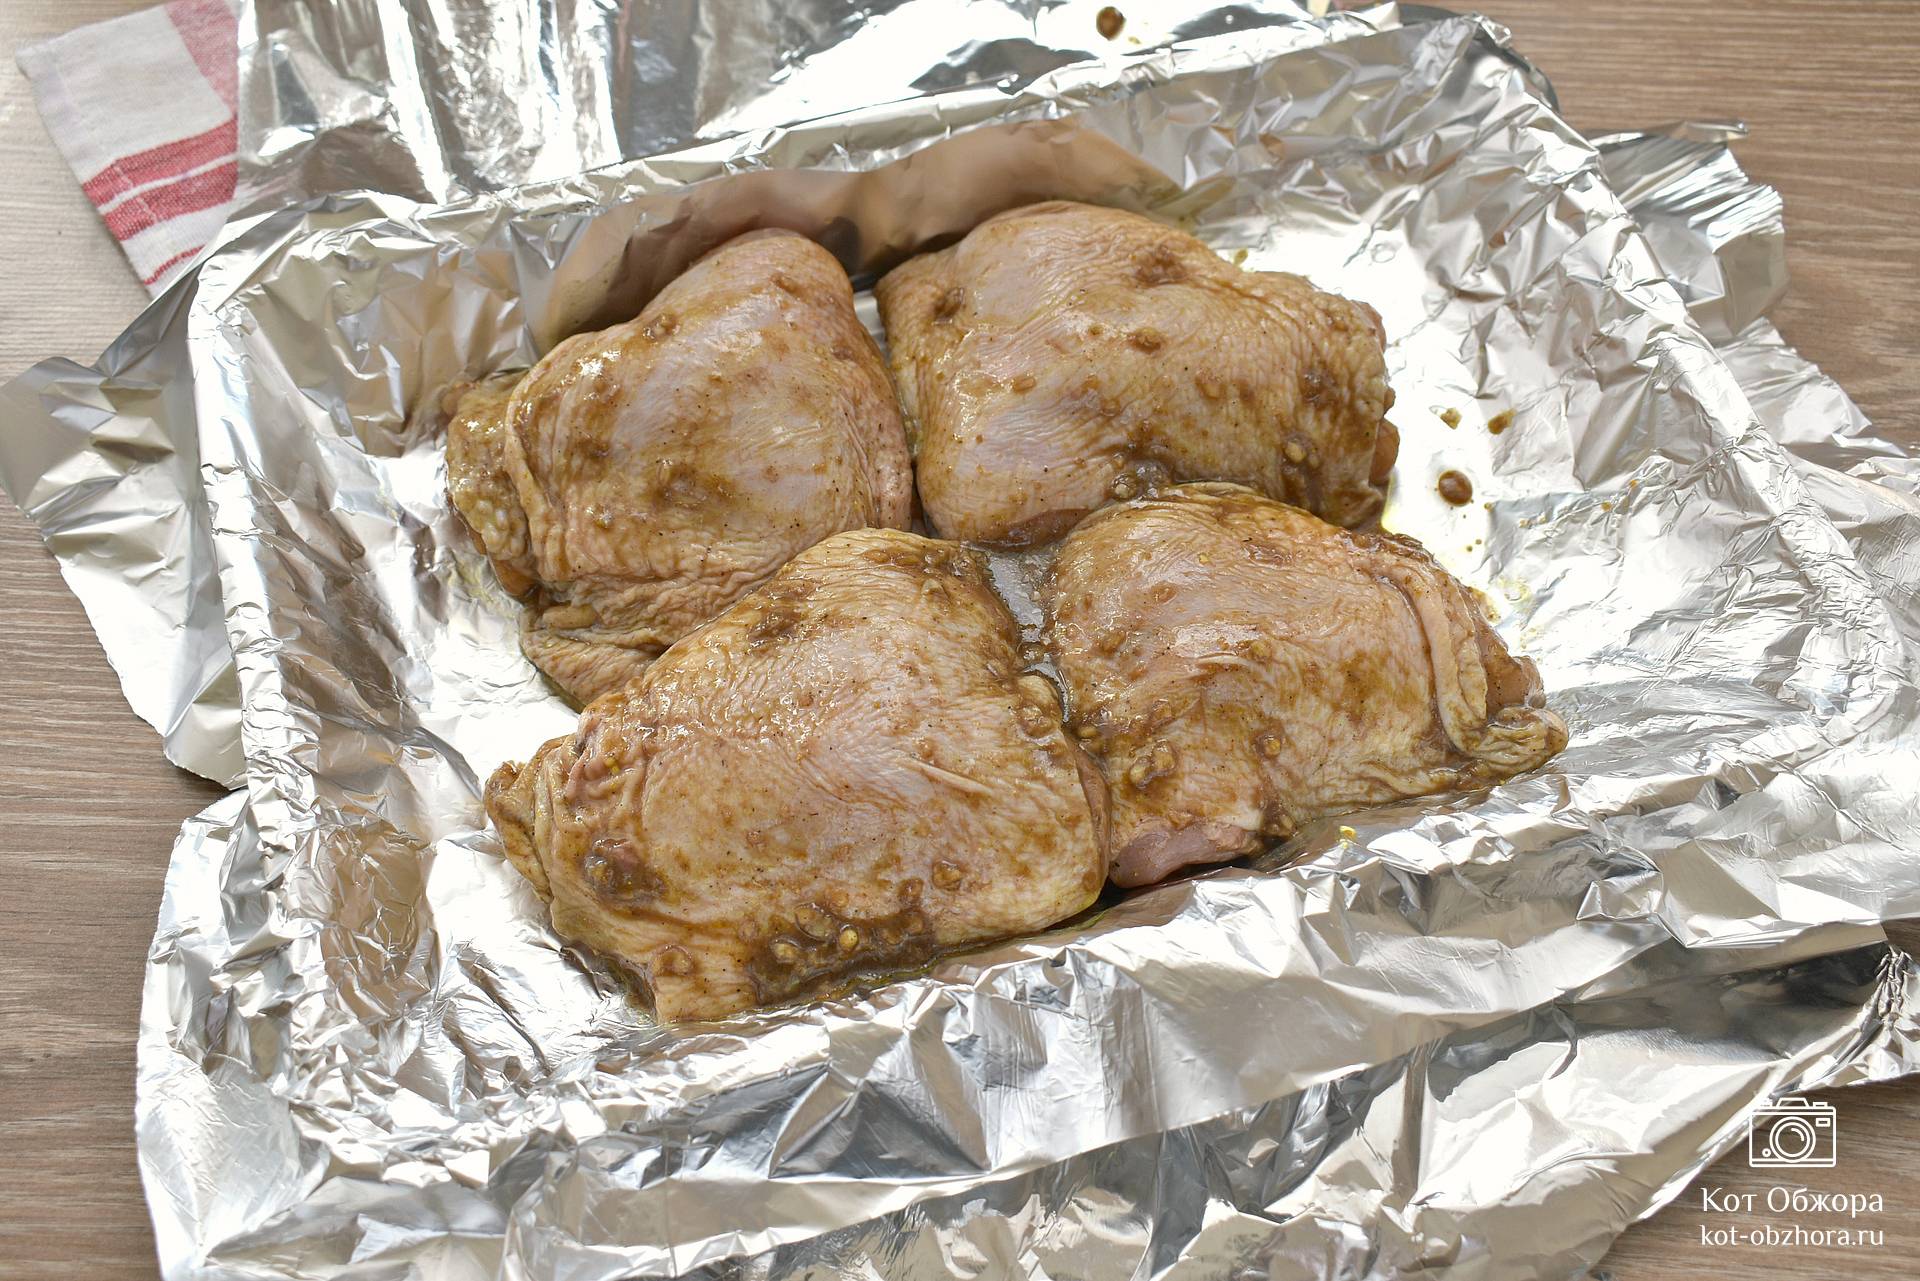 2. Куриные бедра, запеченные в сметане